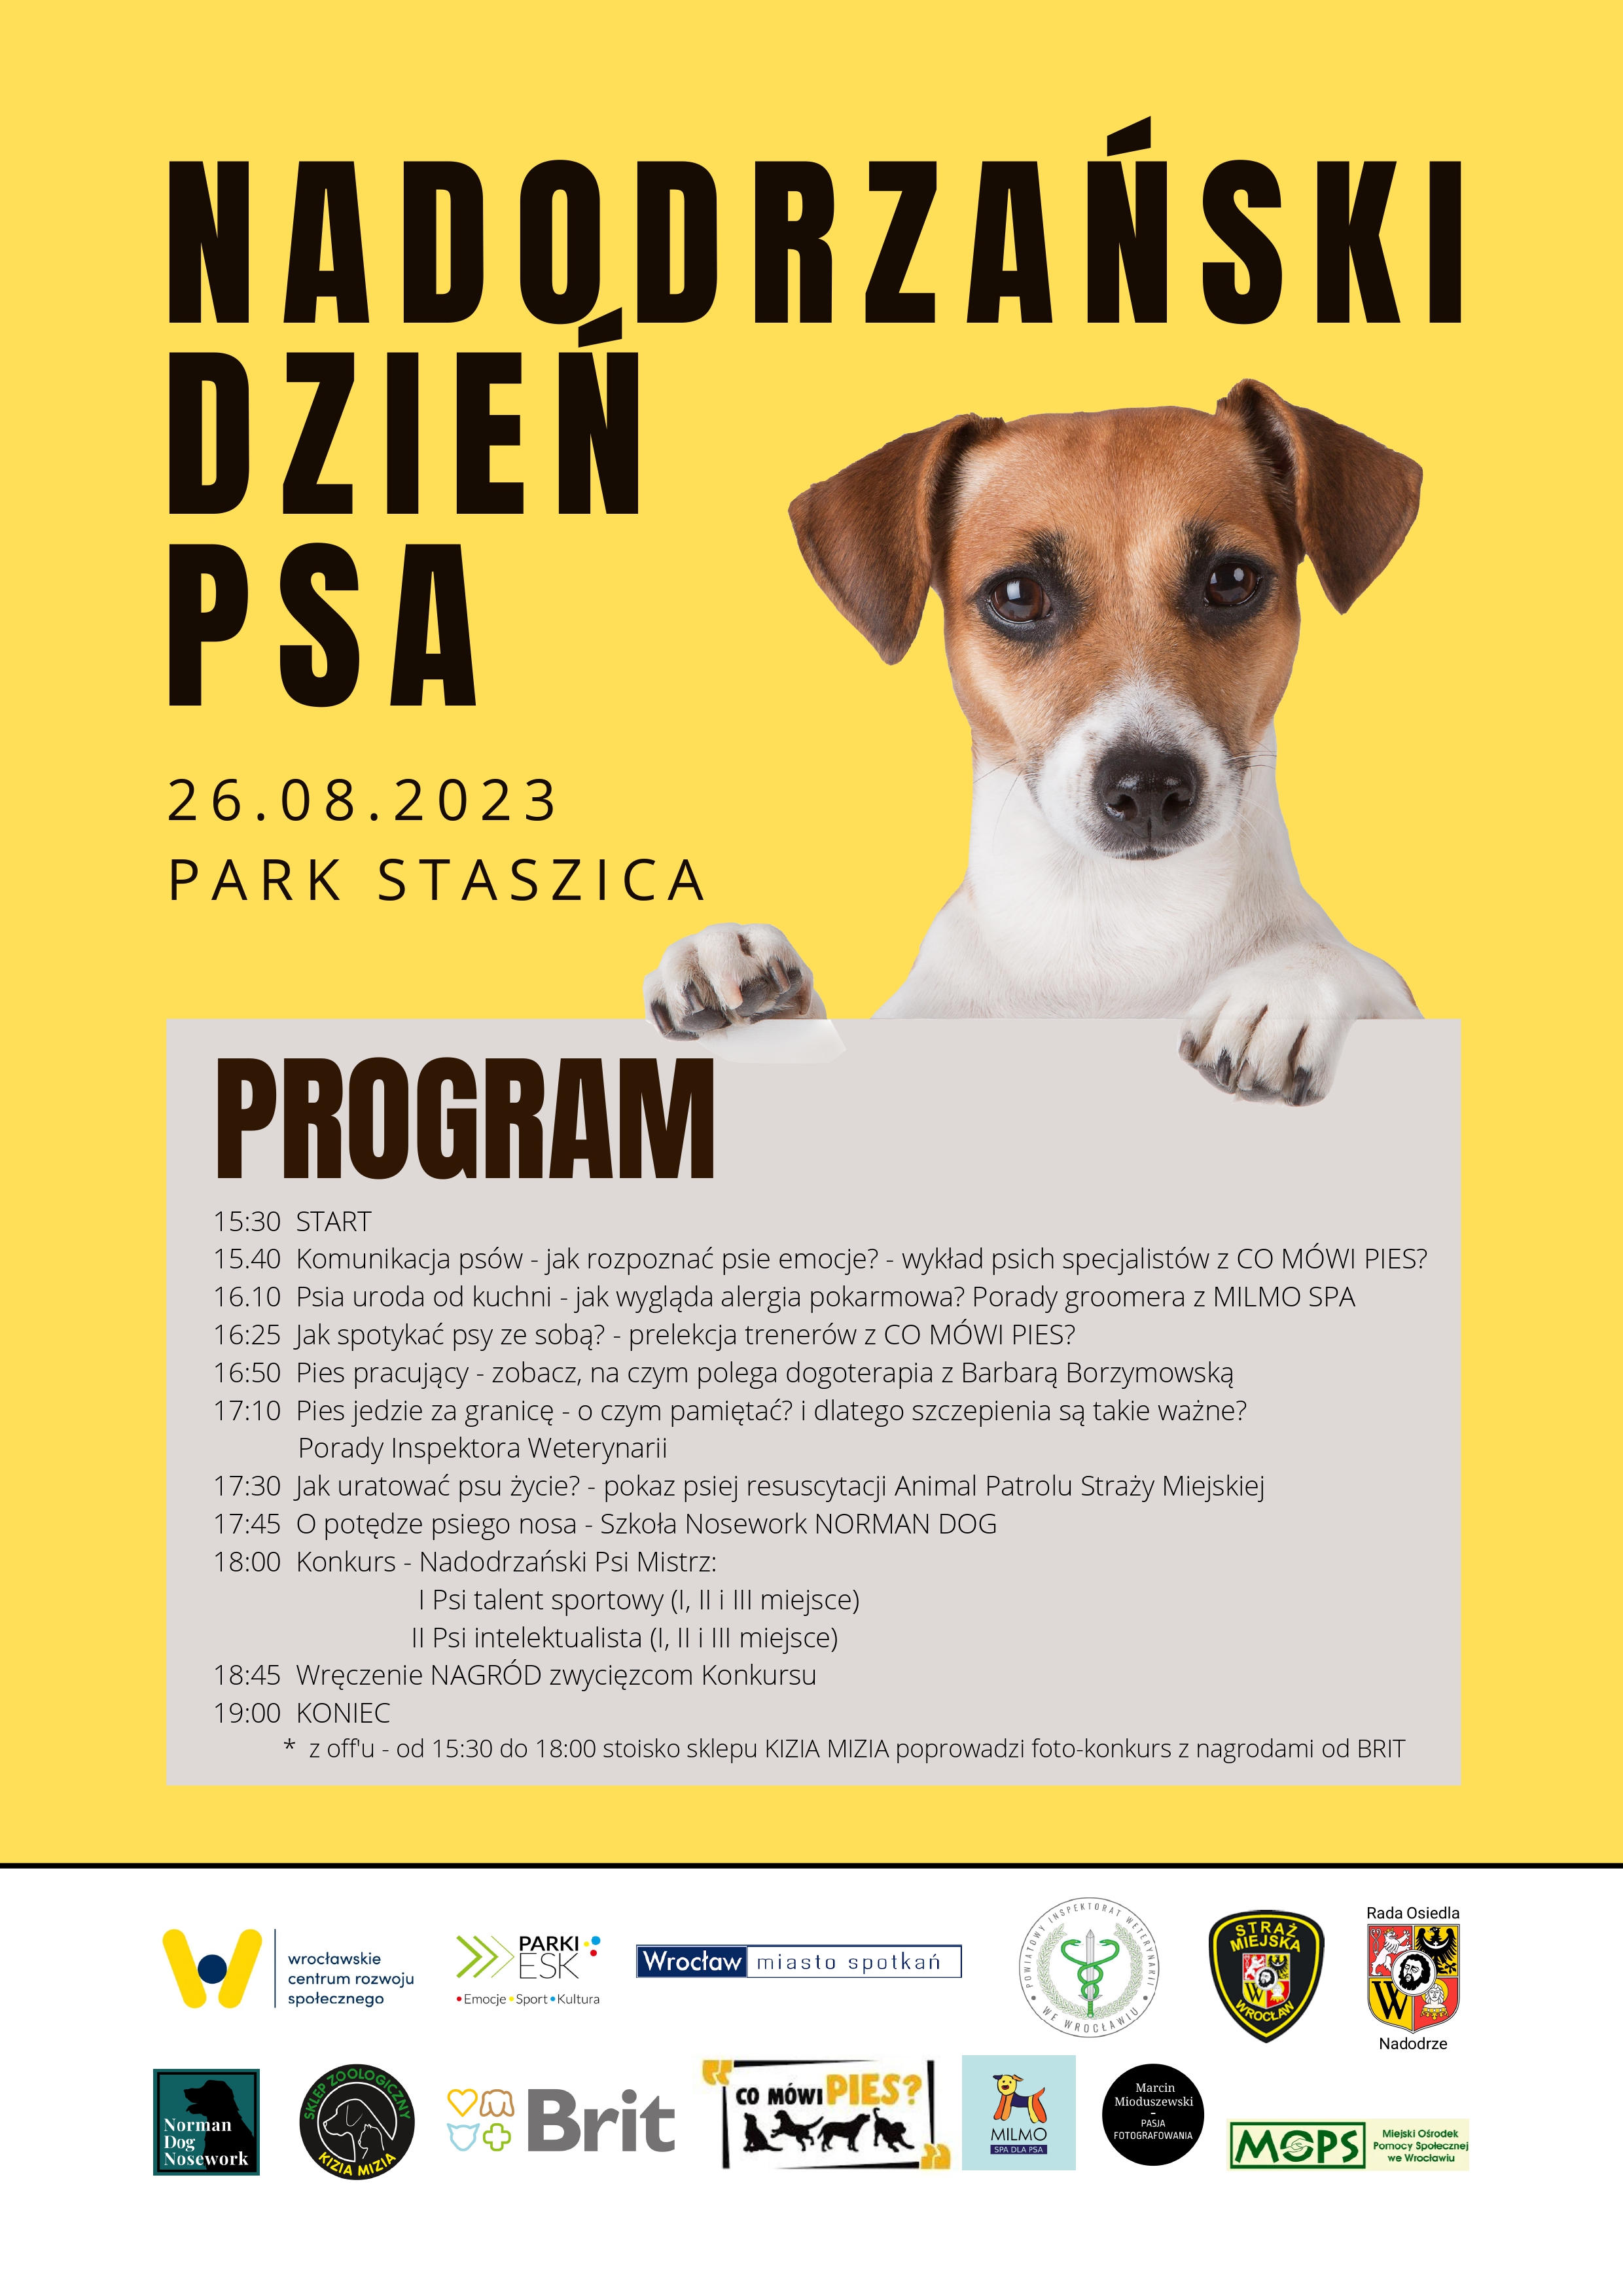 plakat promujący wydarzenie pt. Nadodrzański Dzień Psa 2023 r. z MOPS . Przedstawia na żółtym tle pełny harmonogram, wizerunek szczęśliwego psa, loga organizatorów